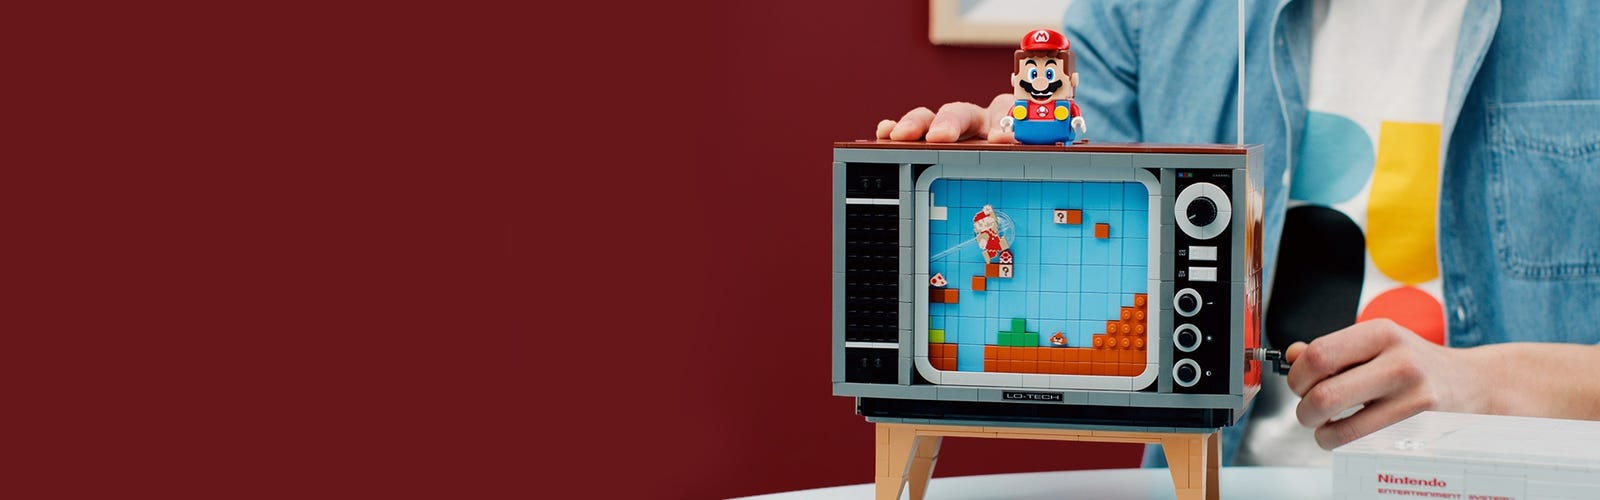 Nintendo x LEGO NES Console Details